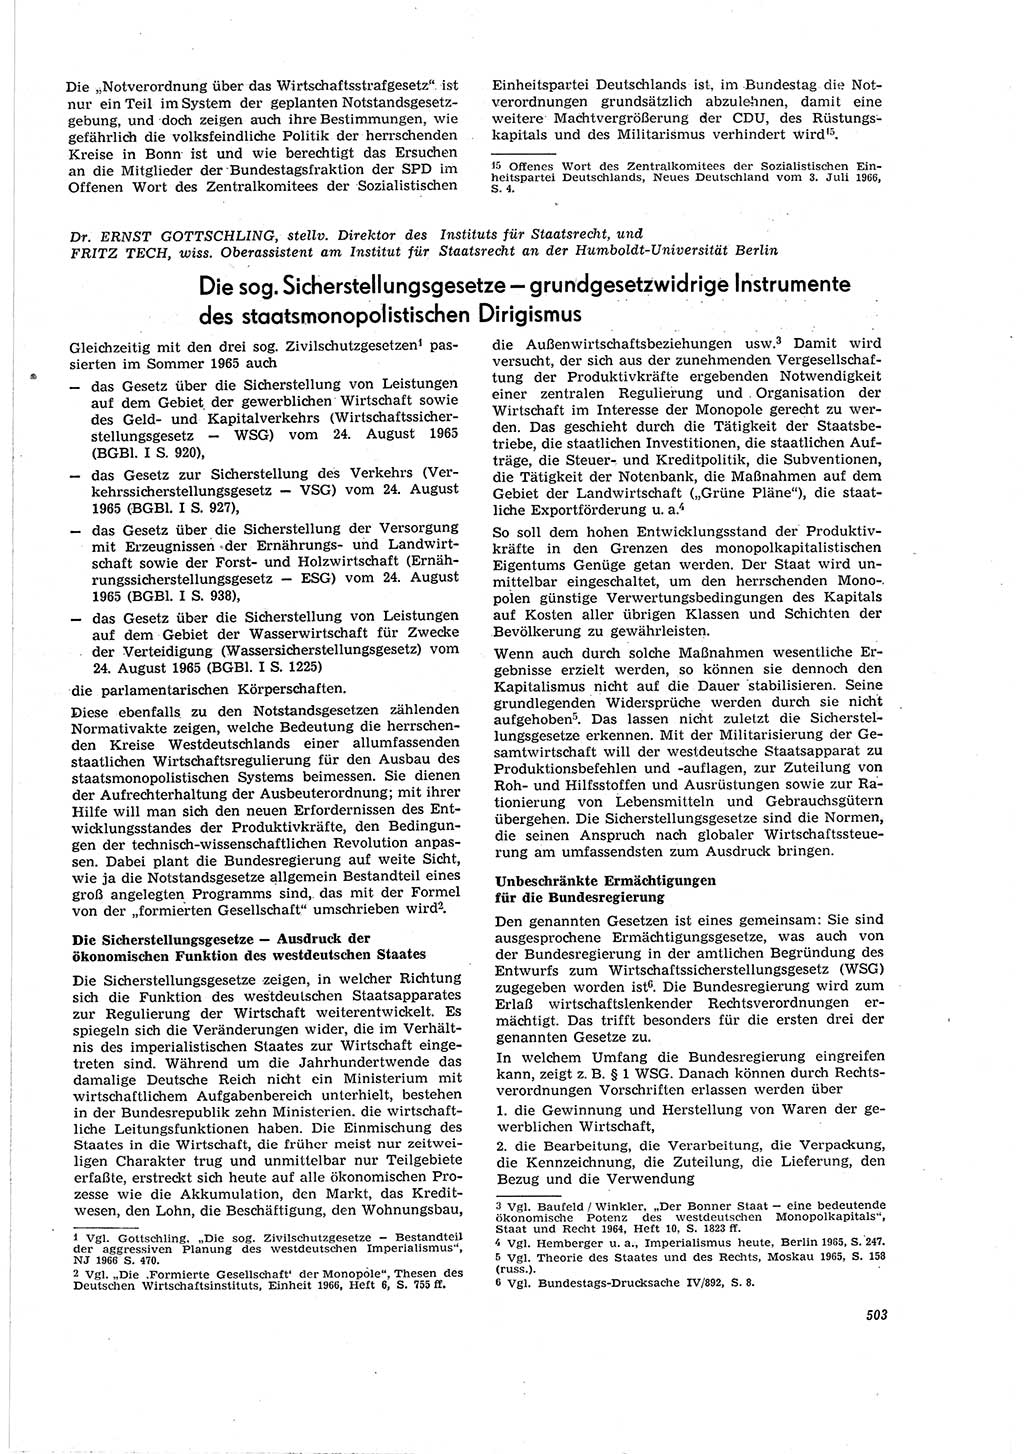 Neue Justiz (NJ), Zeitschrift für Recht und Rechtswissenschaft [Deutsche Demokratische Republik (DDR)], 20. Jahrgang 1966, Seite 503 (NJ DDR 1966, S. 503)